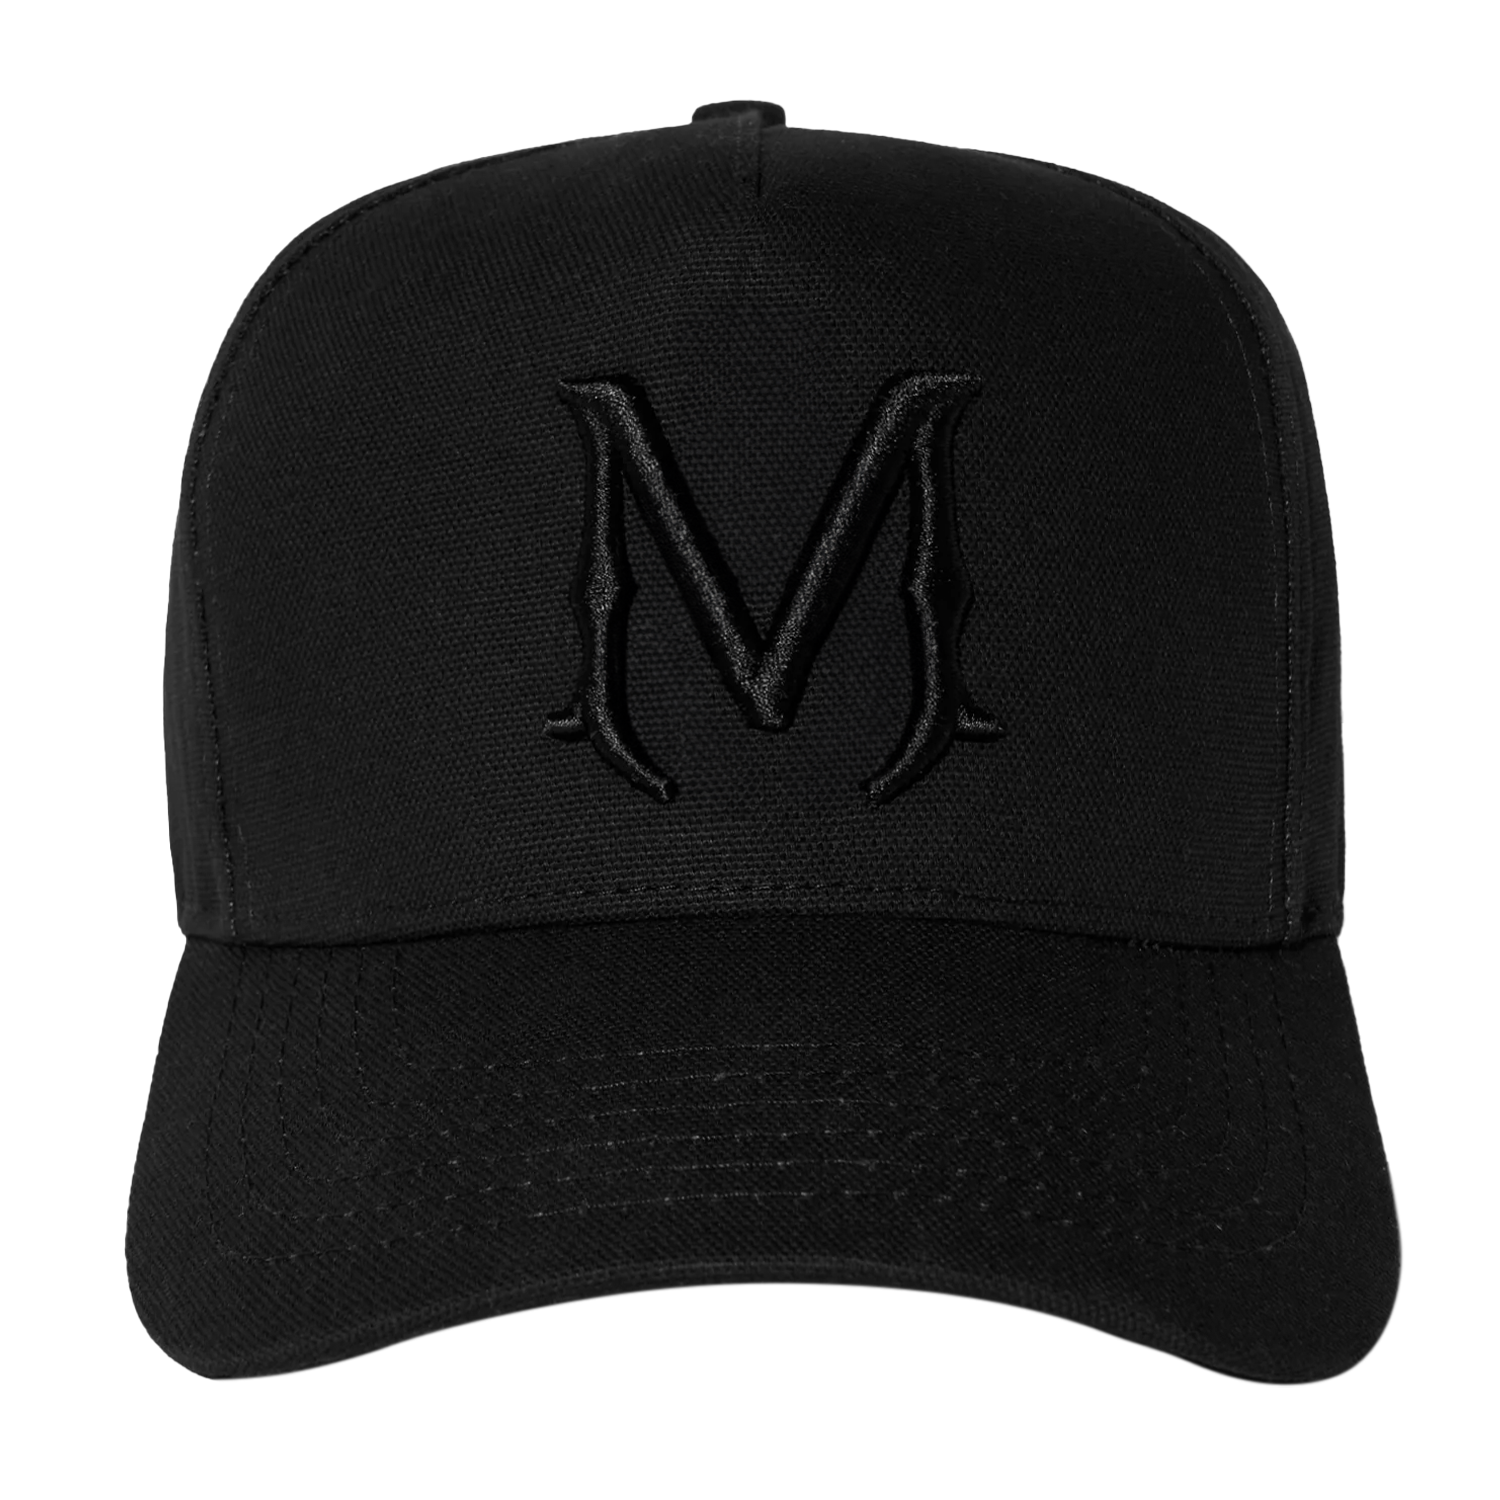 Black/Black Monogram Cap - Mike Clothes